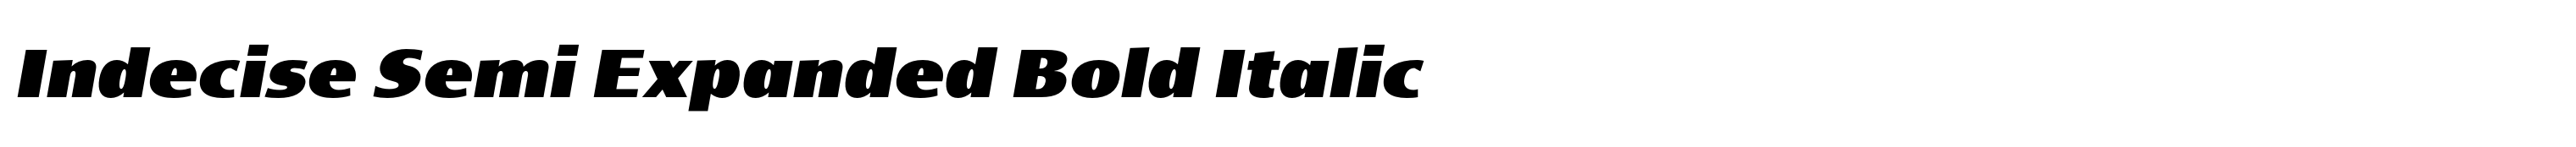 Indecise Semi Expanded Bold Italic